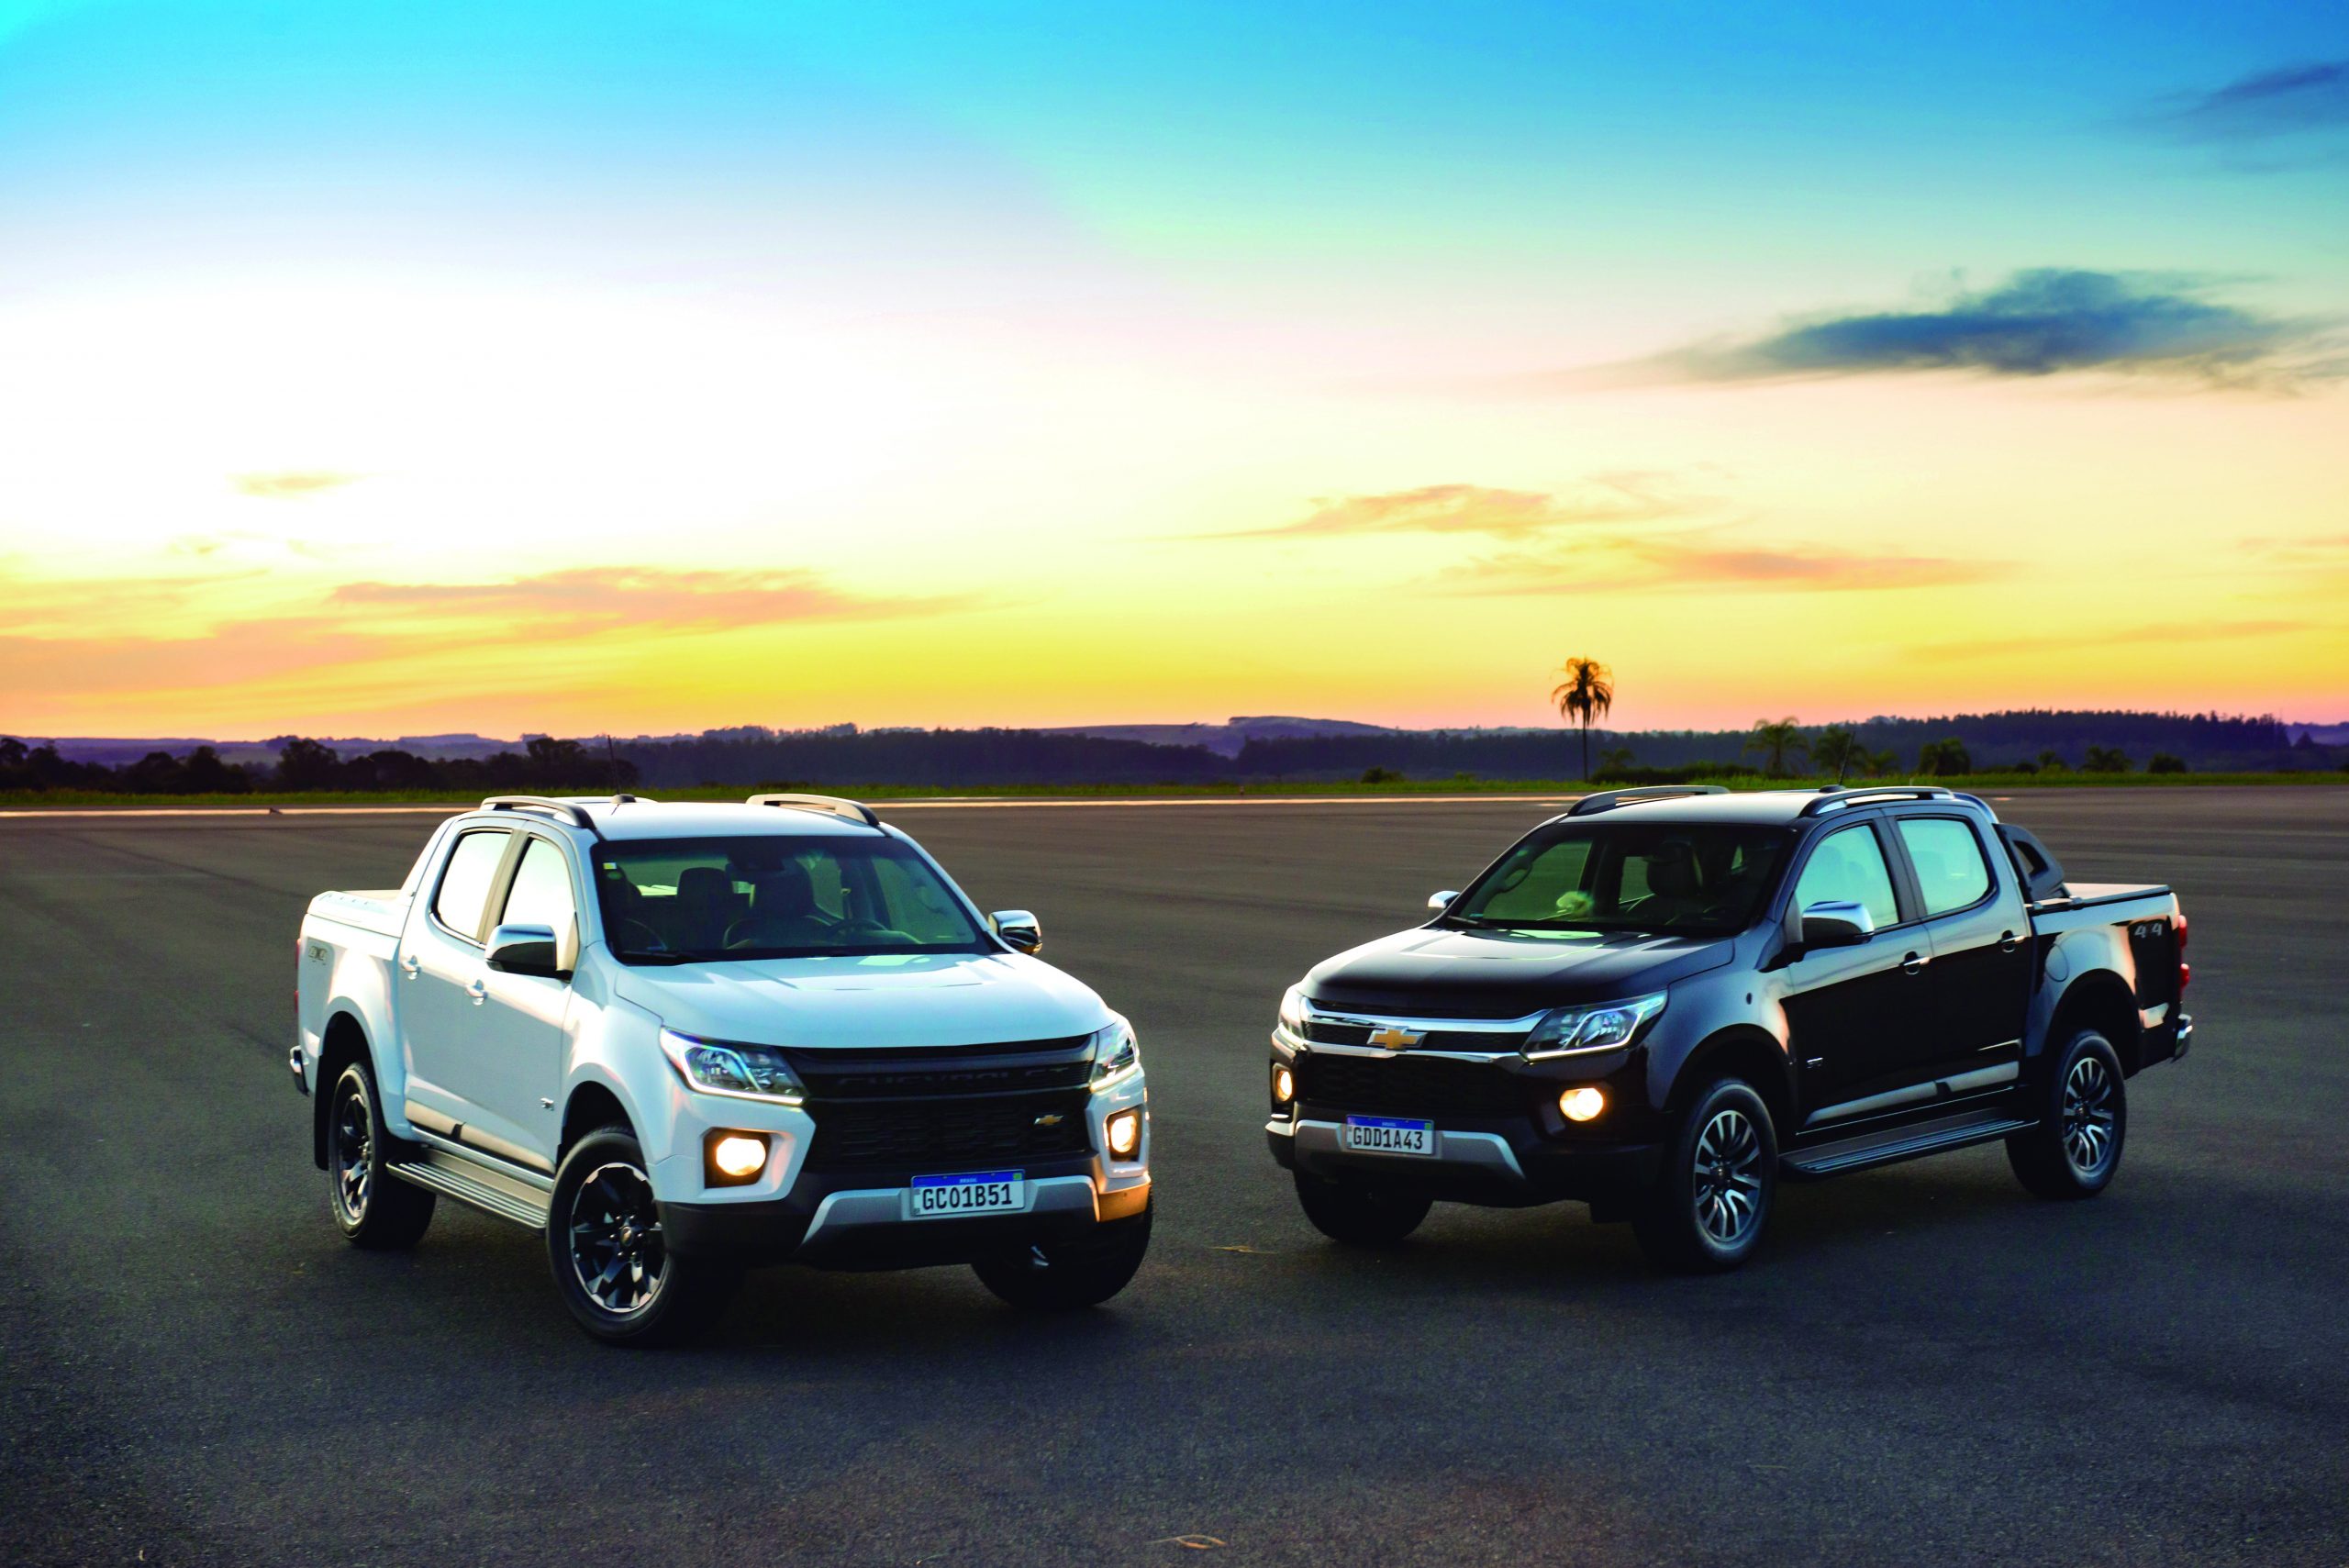 Nova Chevrolet S10 traz tecnologia, internet a bordo, novo visual e mais econômica